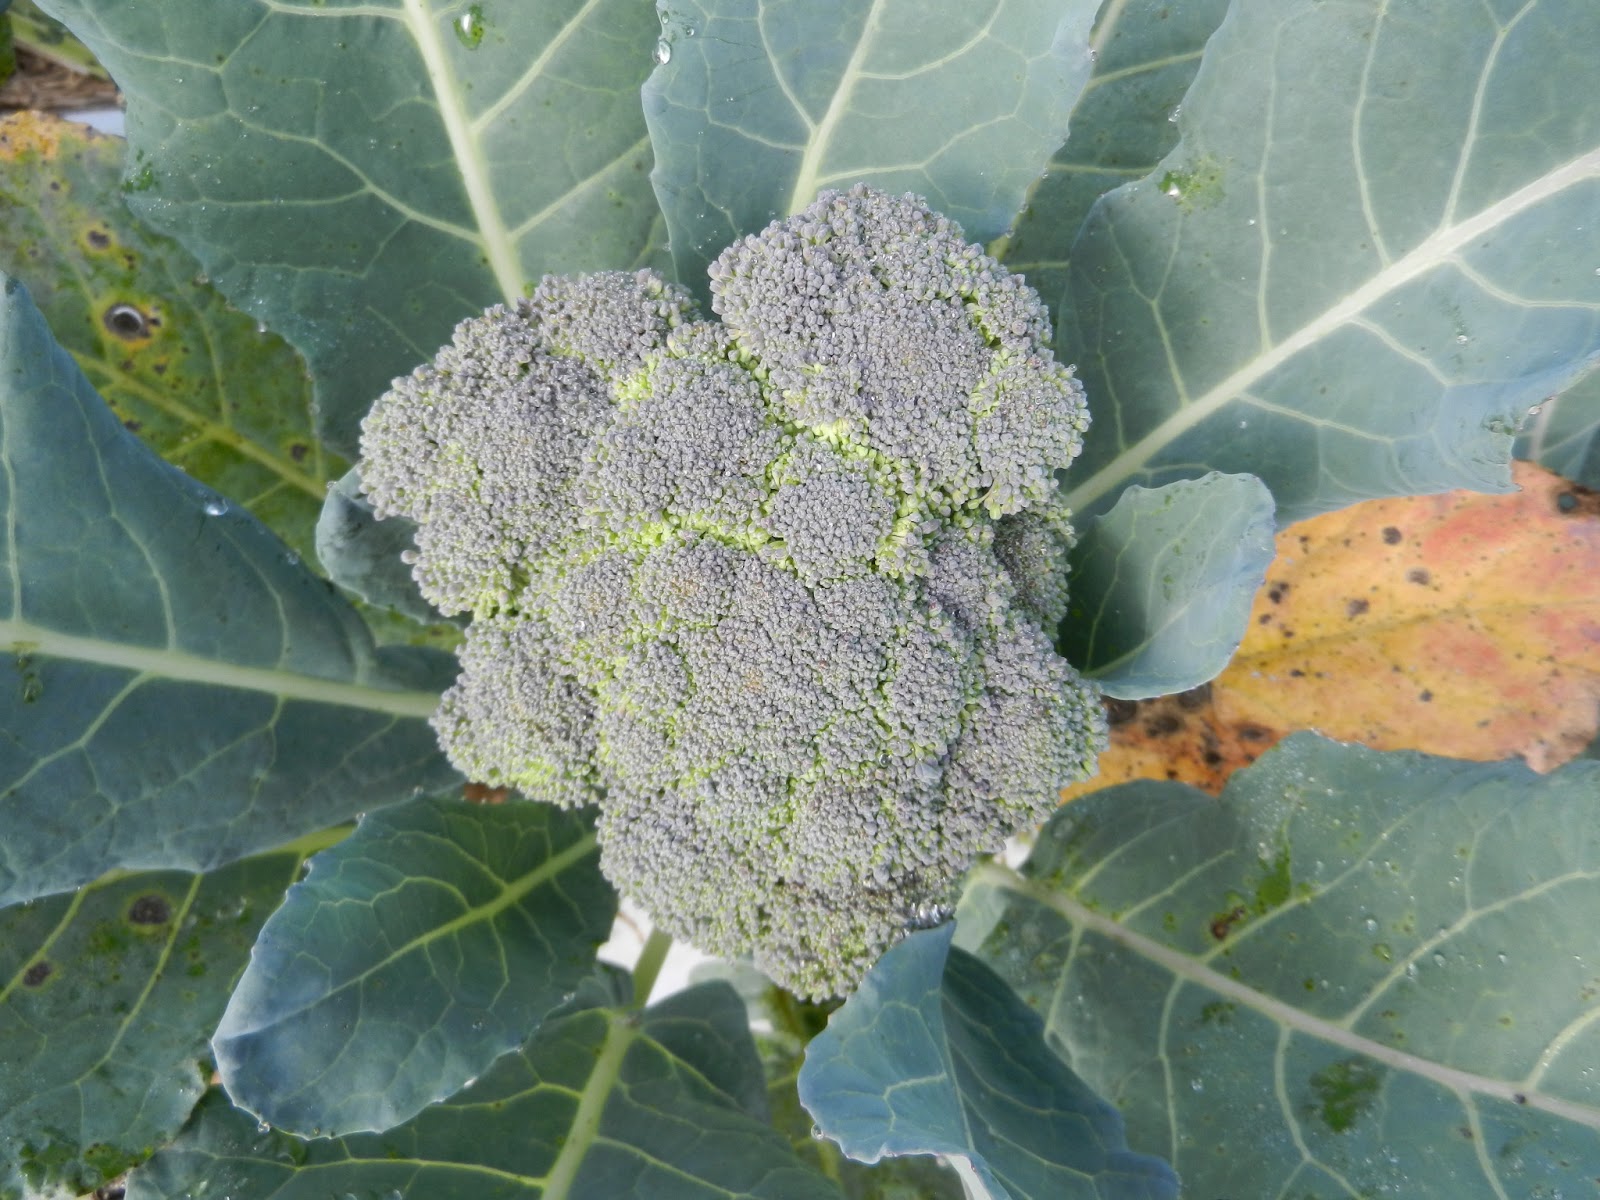 Gypsy broccoli grown in 2012